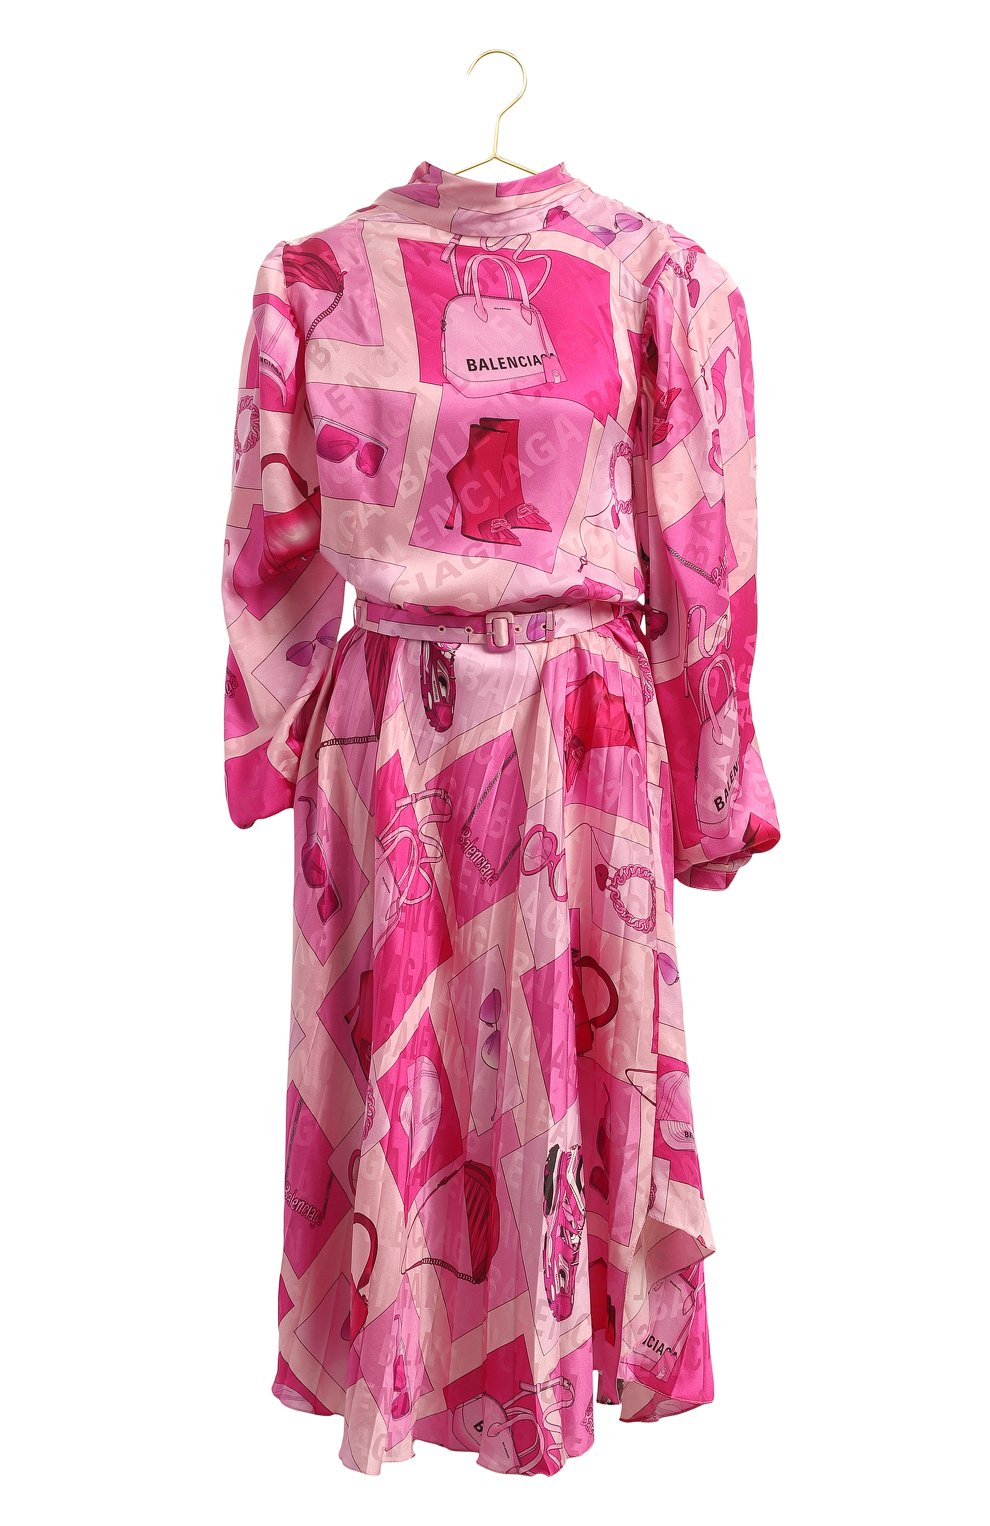 Шелковое платье | Balenciaga | Розовый - 1